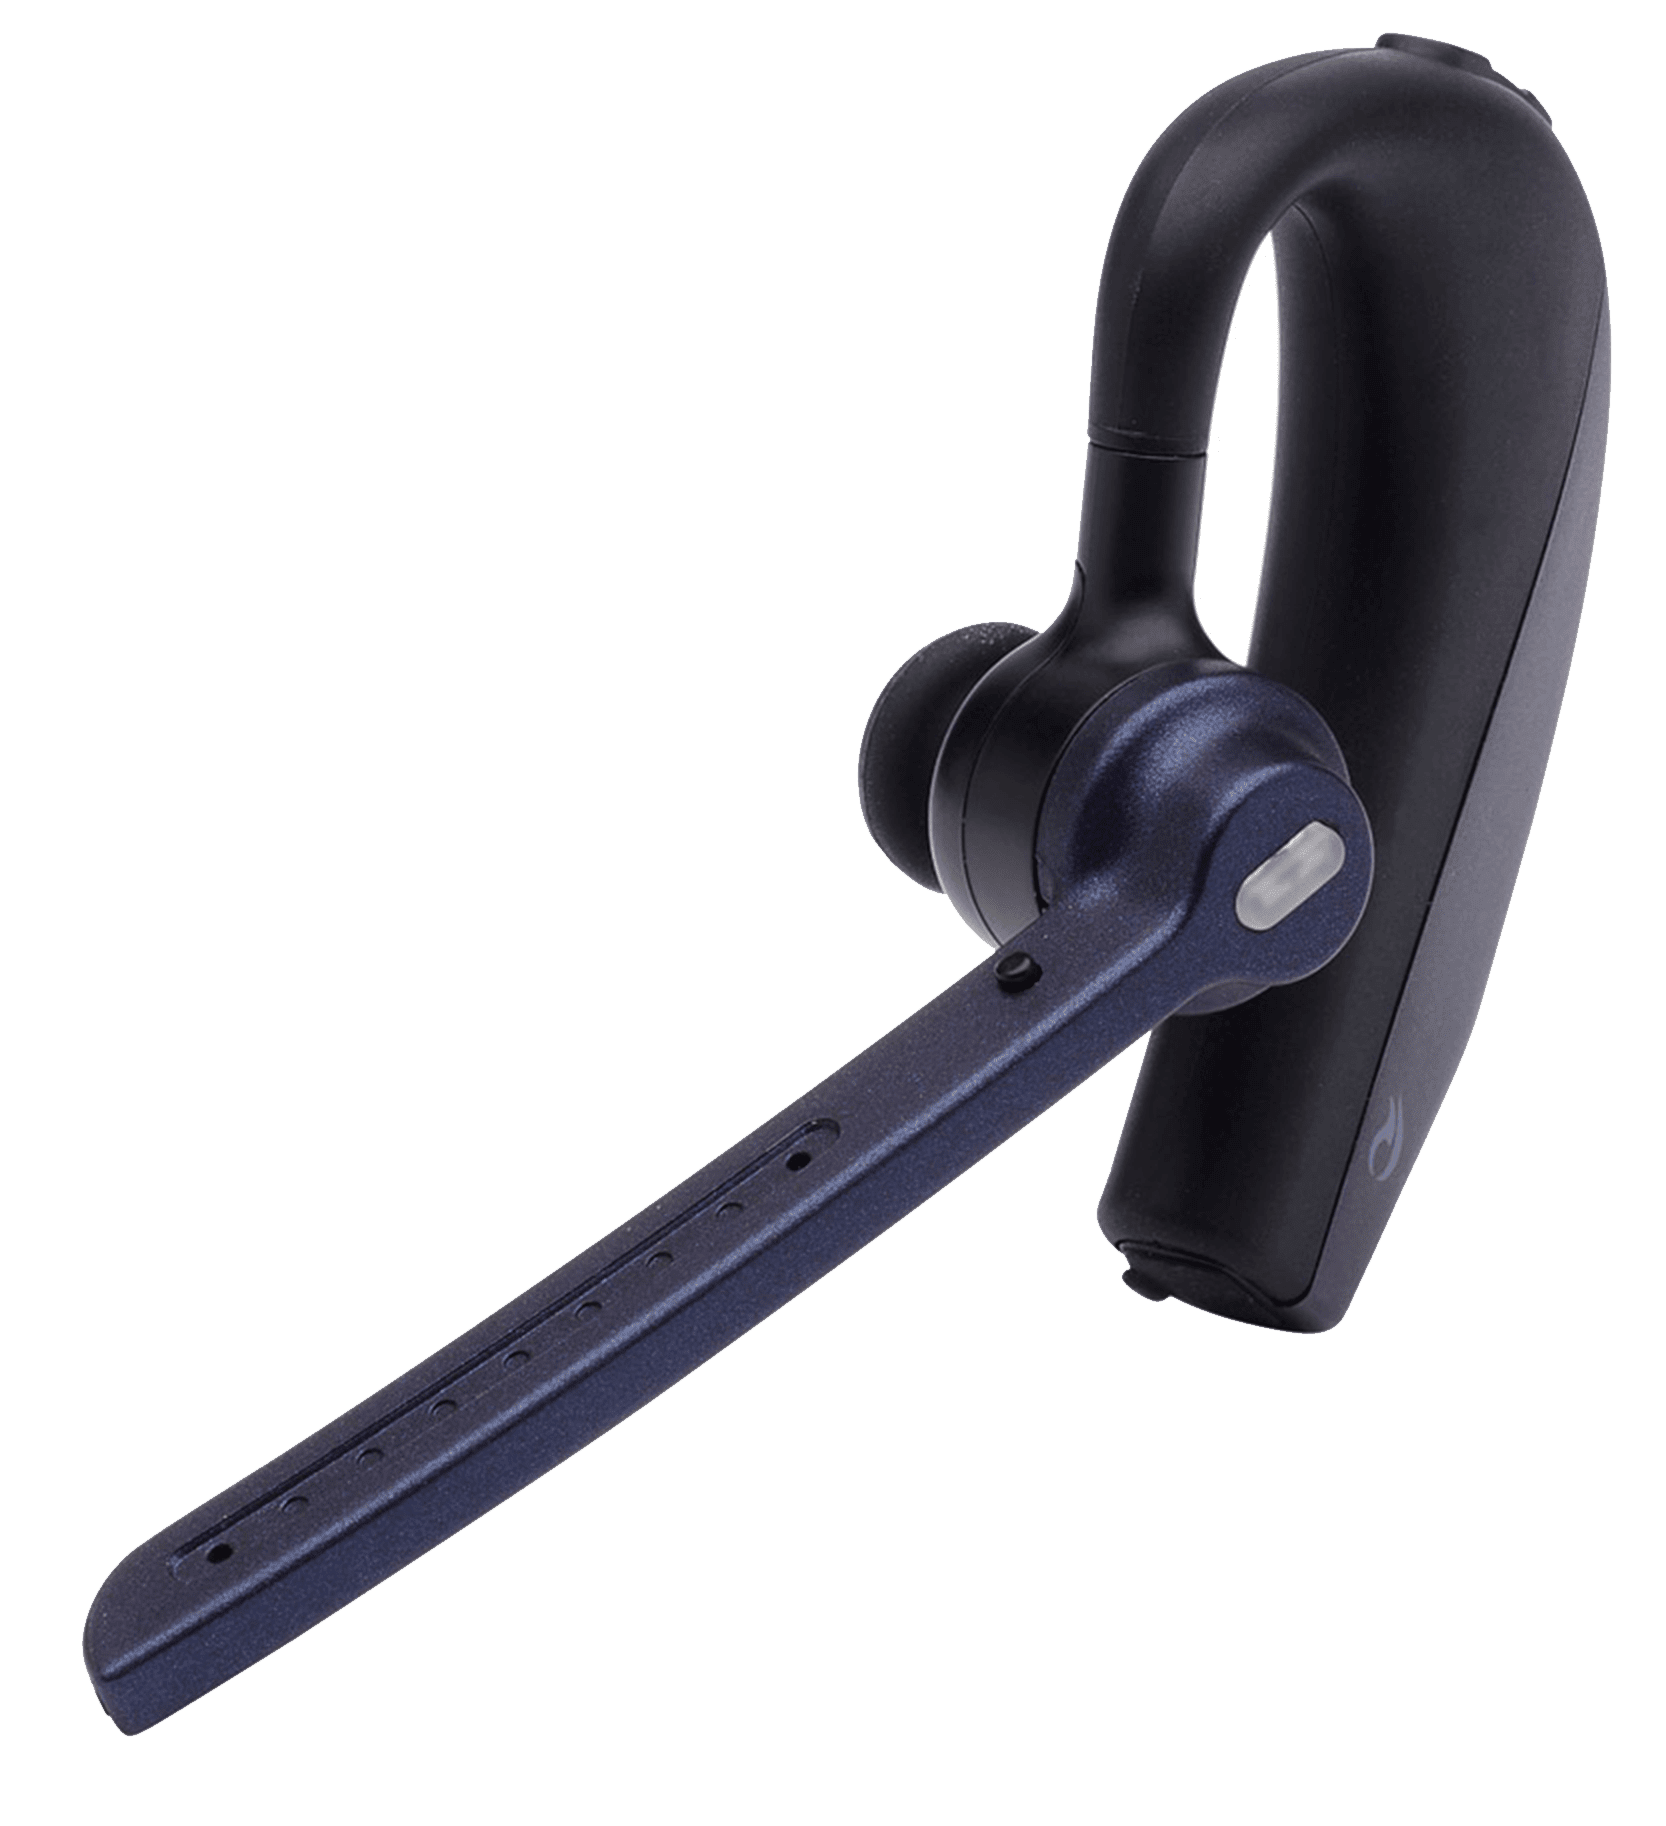 Nuance Dragon Bezprzewodowy zestaw słuchawkowy Bluetooth-II